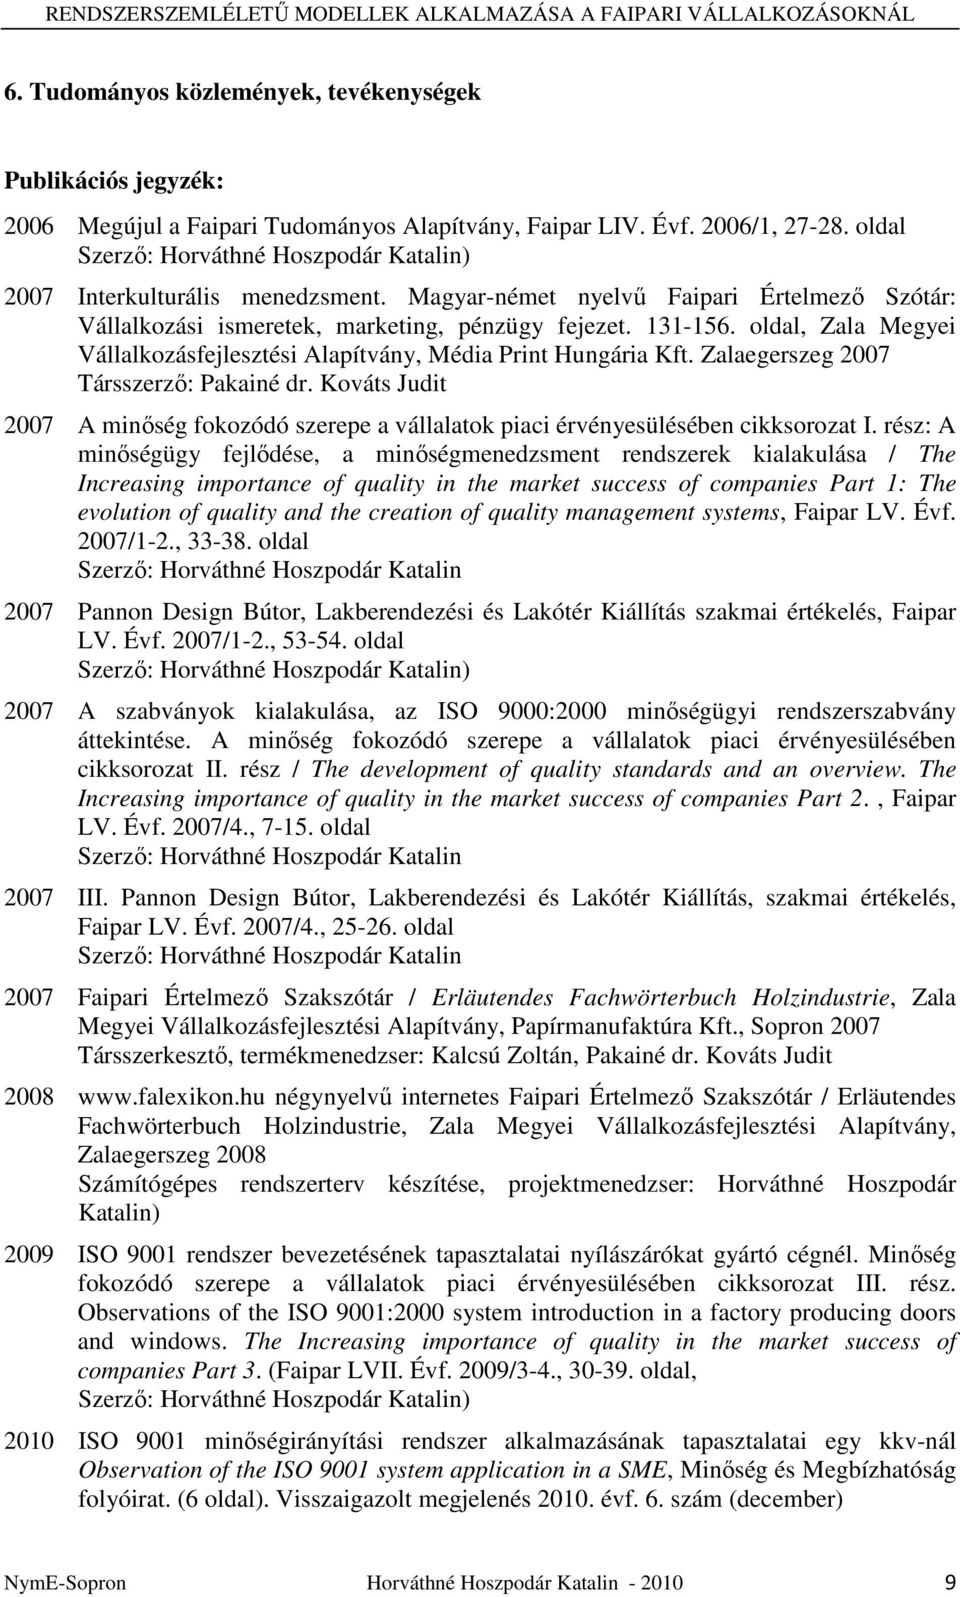 oldal, Zala Megyei Vállalkozásfejlesztési Alapítvány, Média Print Hungária Kft. Zalaegerszeg 2007 Társszerzı: Pakainé dr.